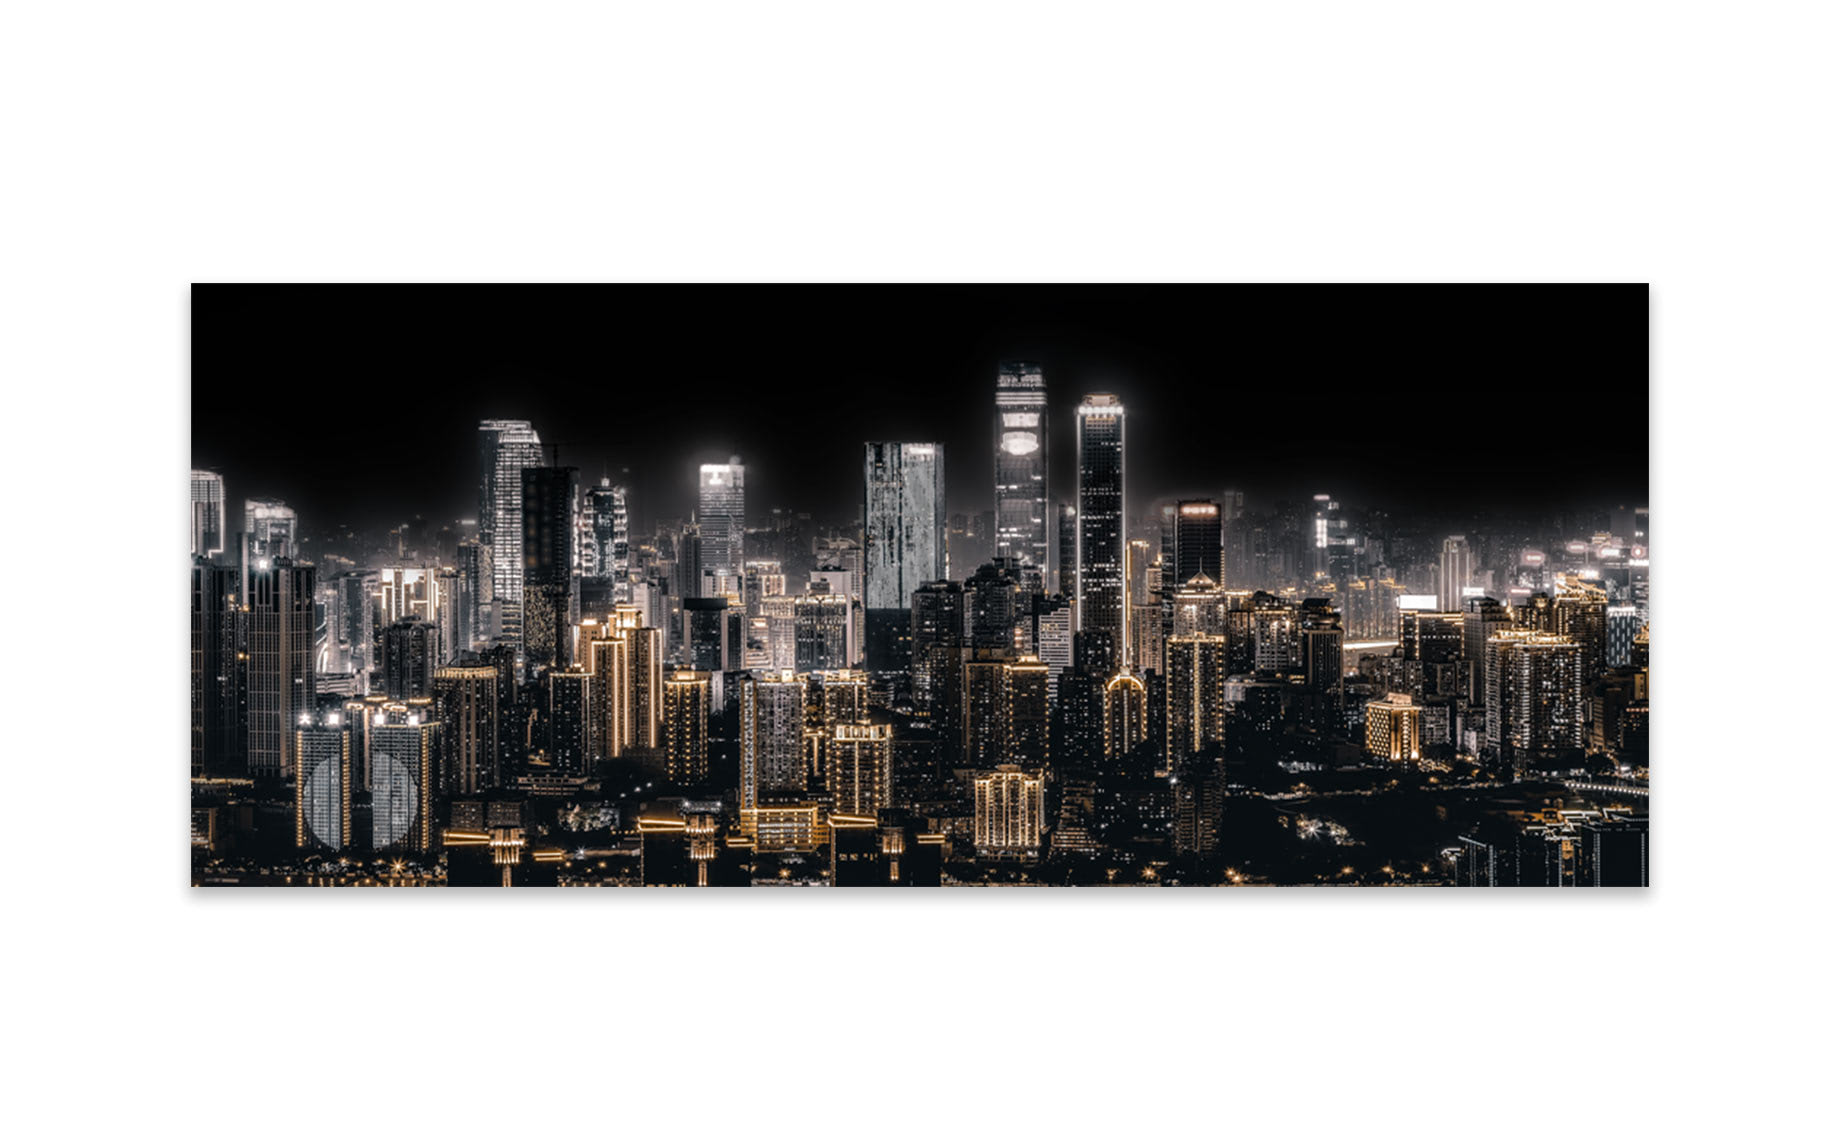 Slika staklo Shining city 50x125cm